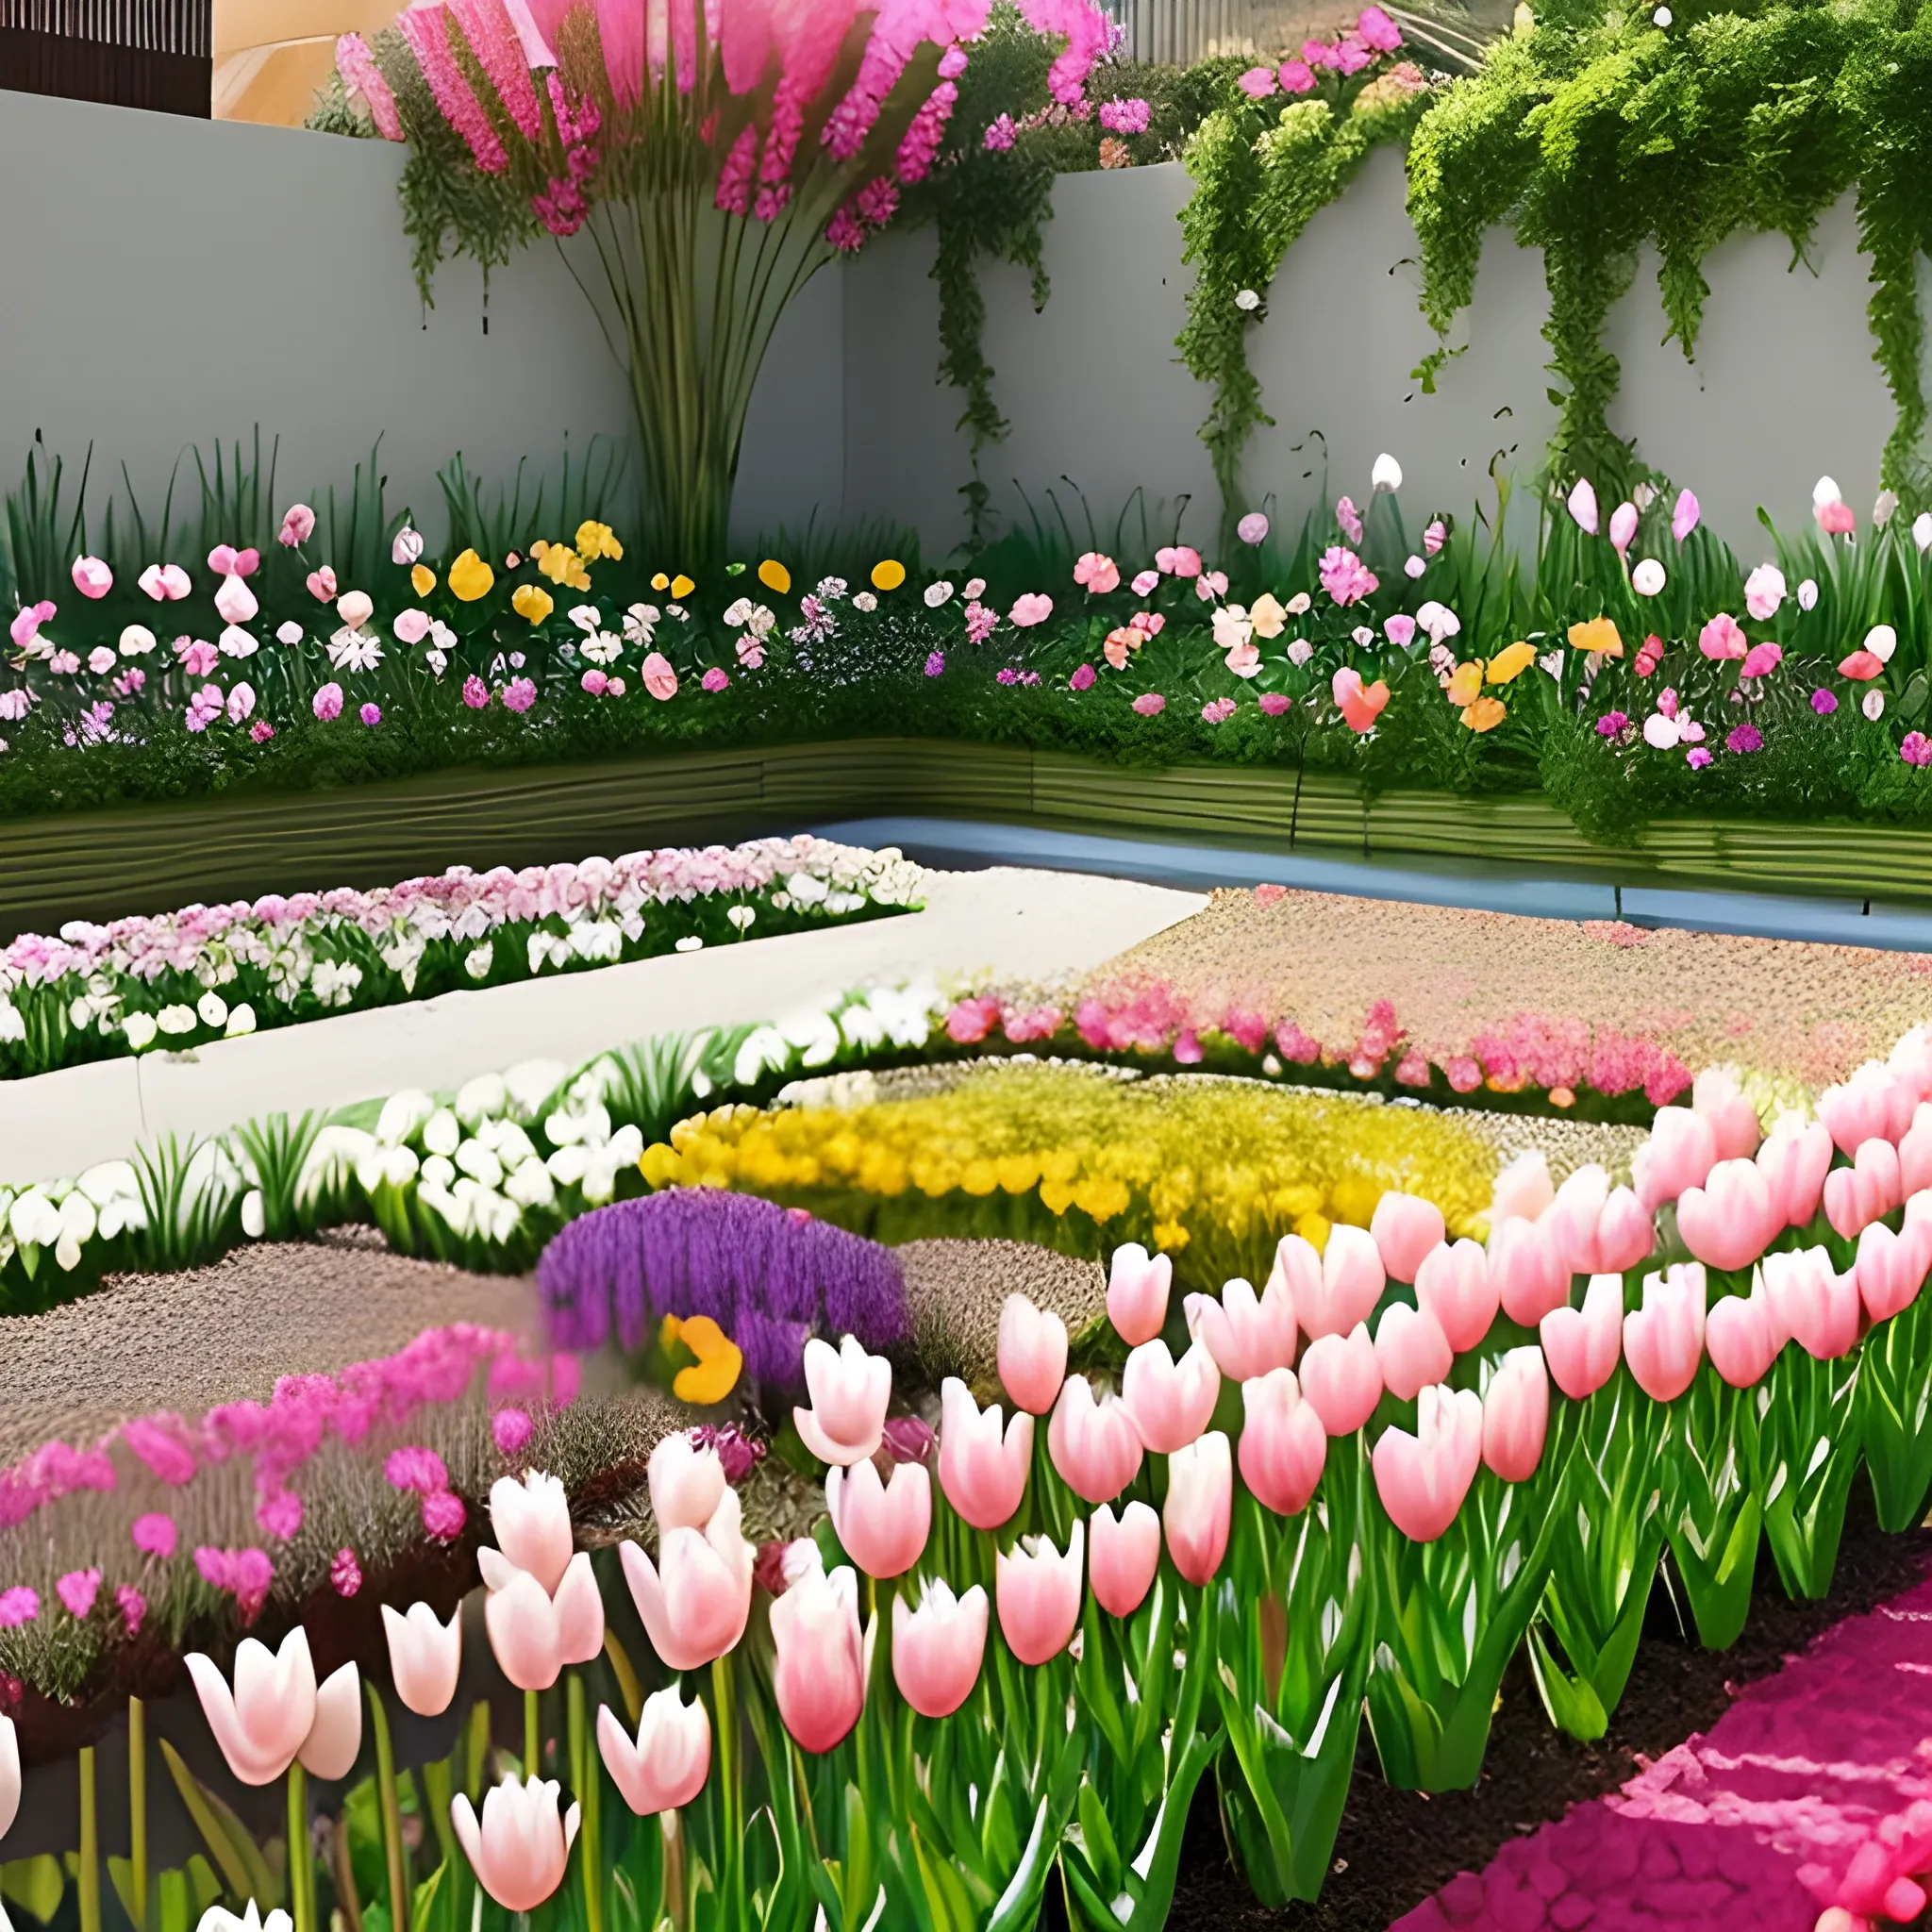 Un jardín de primavera: Imagina un jardín rebosante de flores en plena primavera. Los tulipanes, narcisos y margaritas despliegan sus colores vivos bajo el sol. Las abejas zumban de flor en flor mientras el aroma dulce de las flores llena el aire.